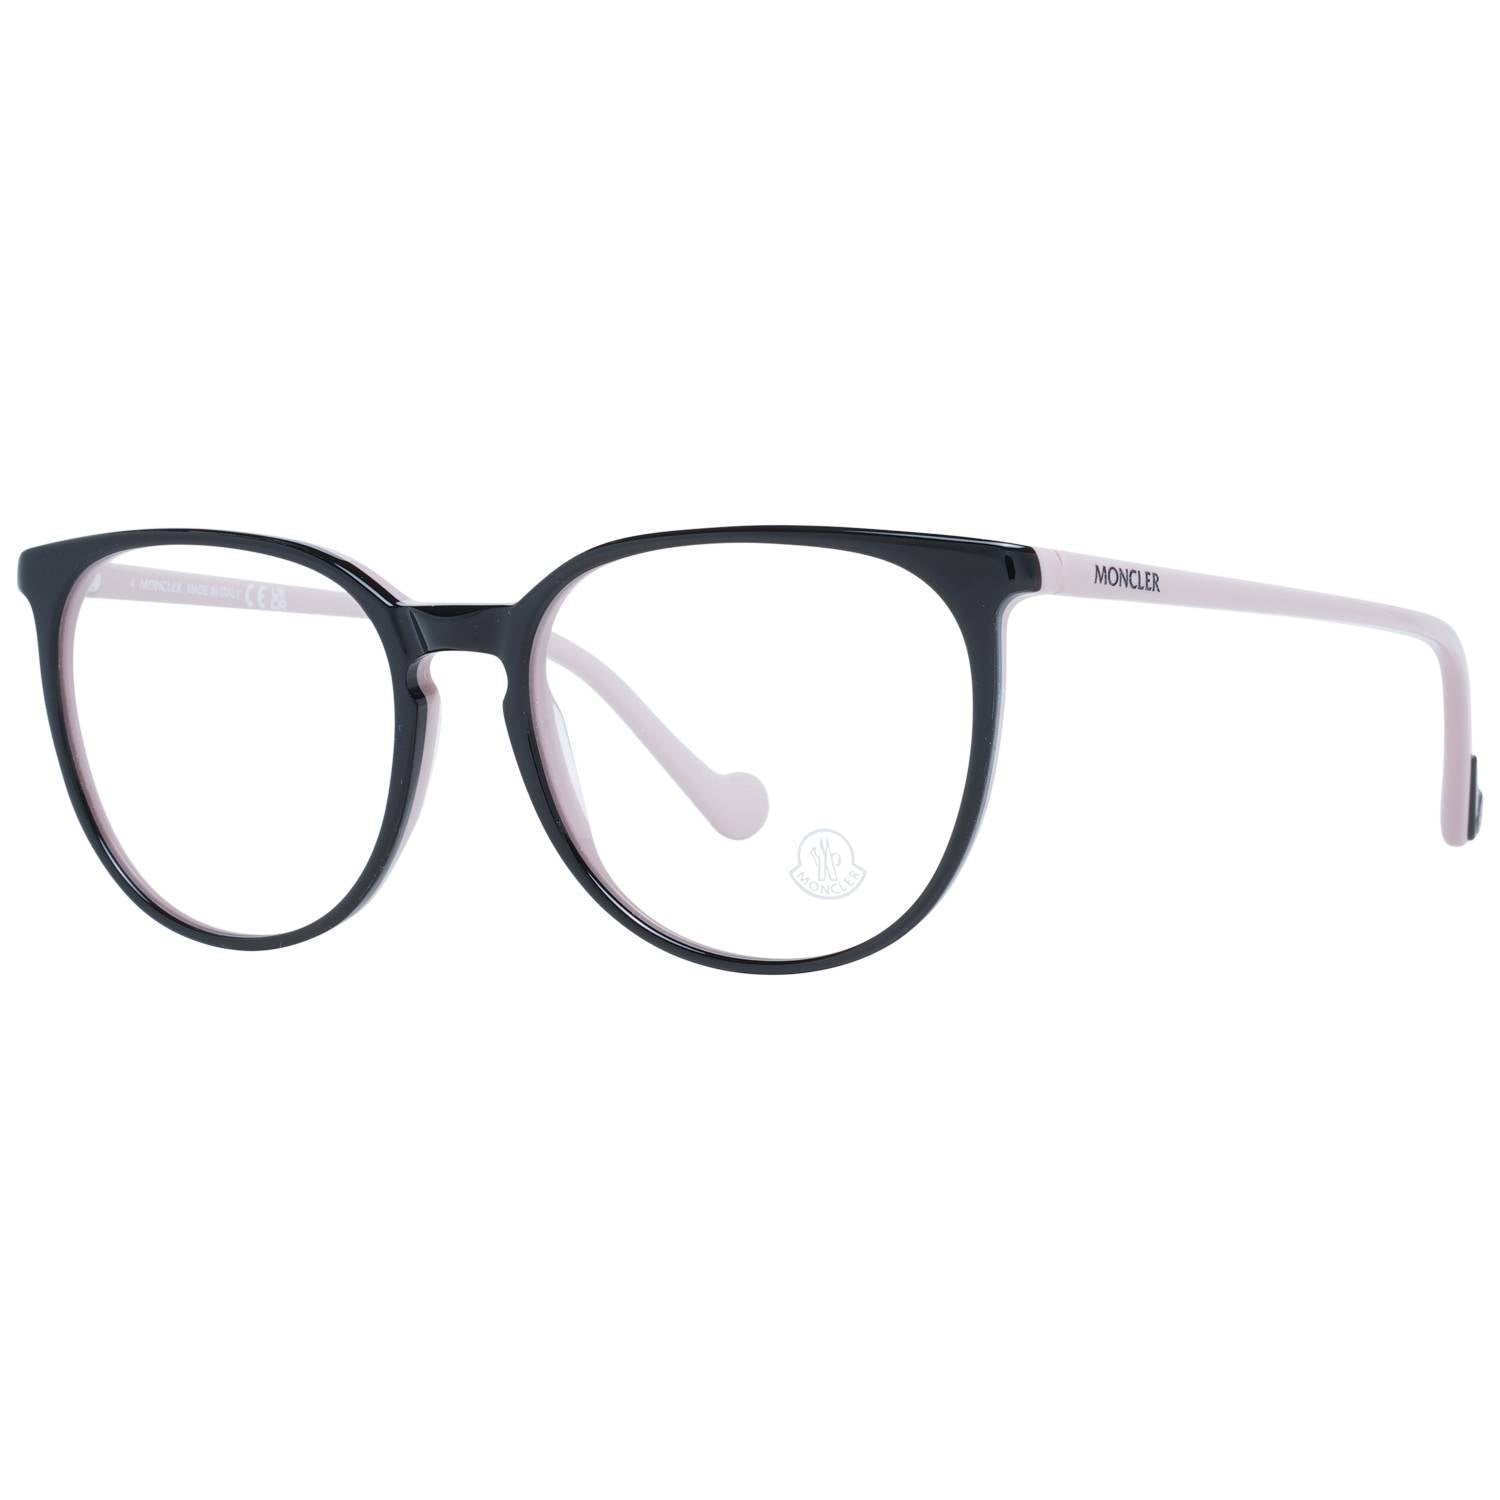 Moncler Eyeglasses Moncler Glasses Frames ML5089 005 54mm Eyeglasses Eyewear UK USA Australia 